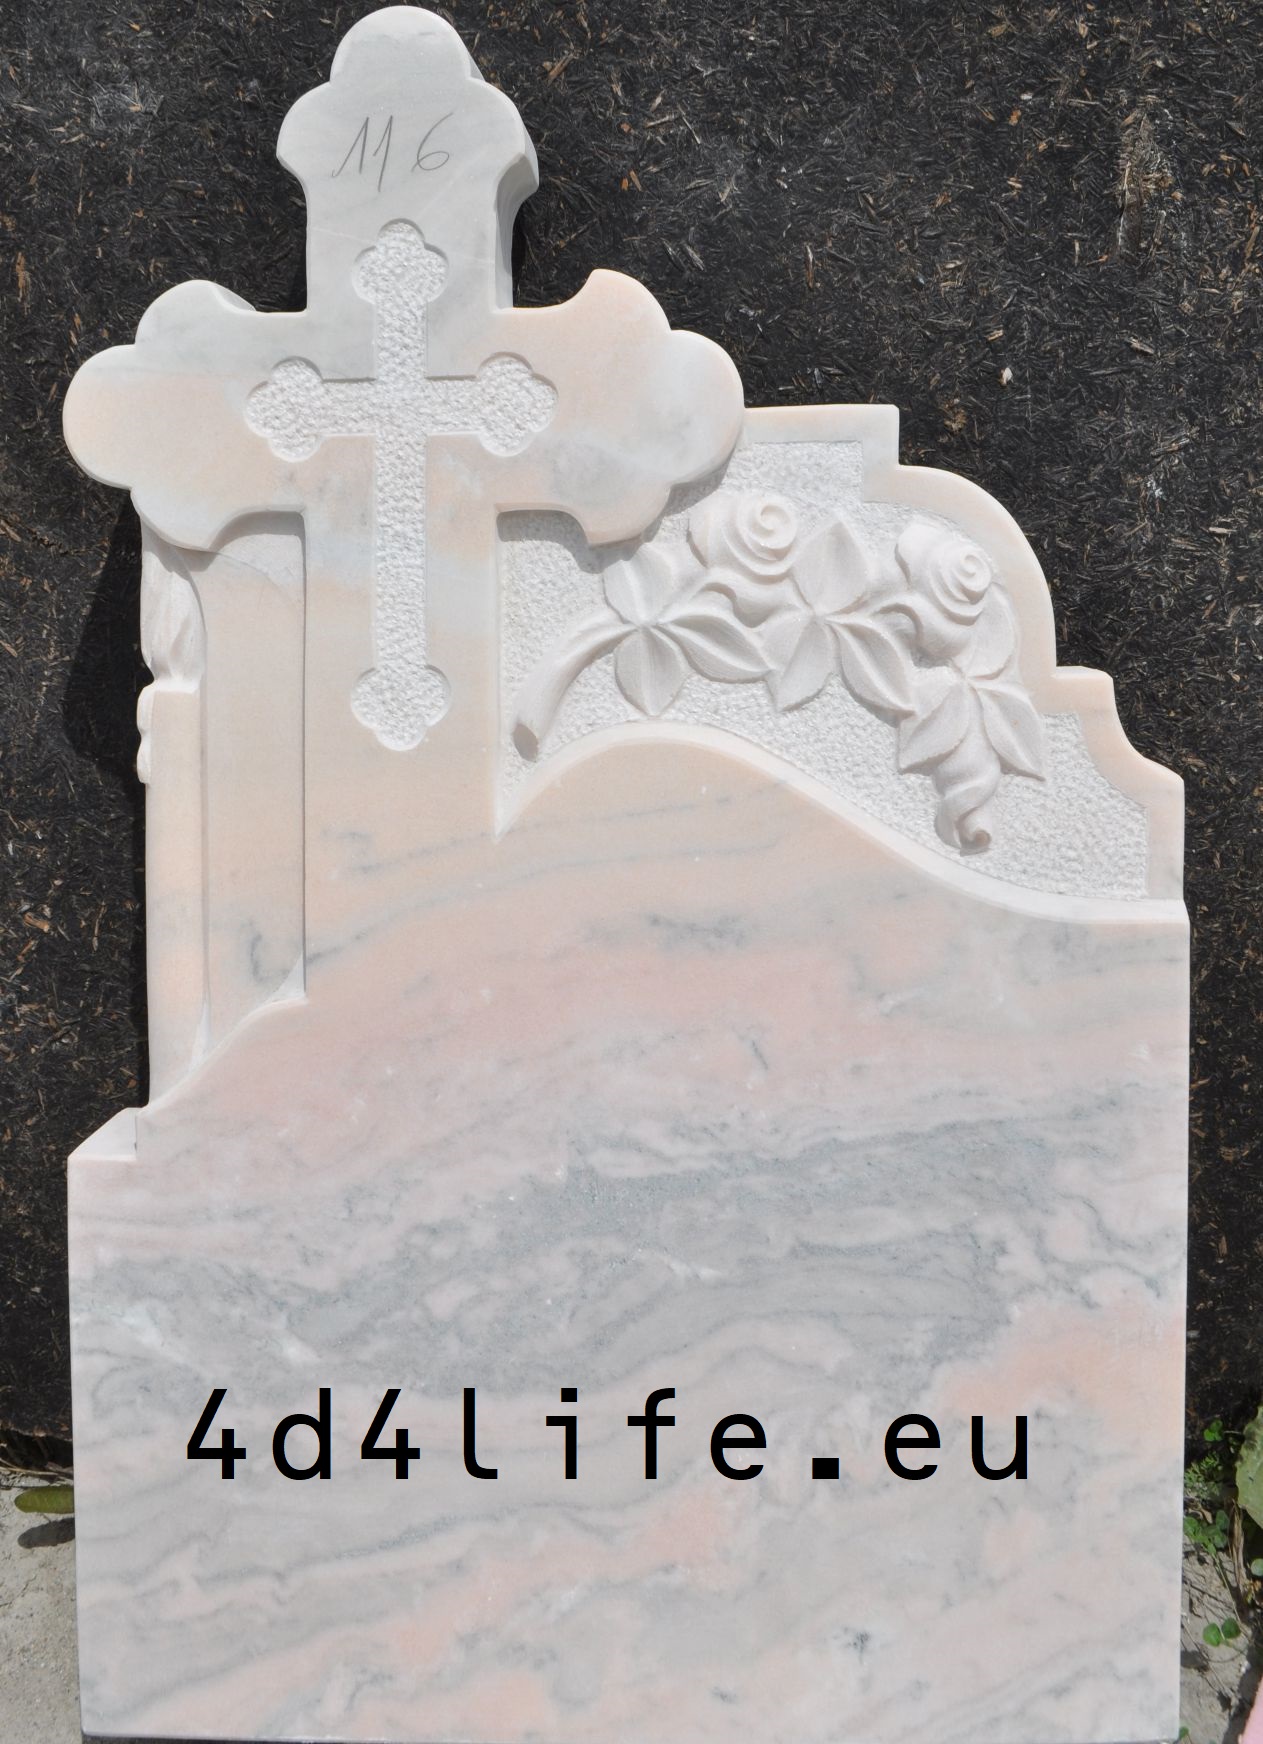 Cruce funerare nodel: 4d4life 116